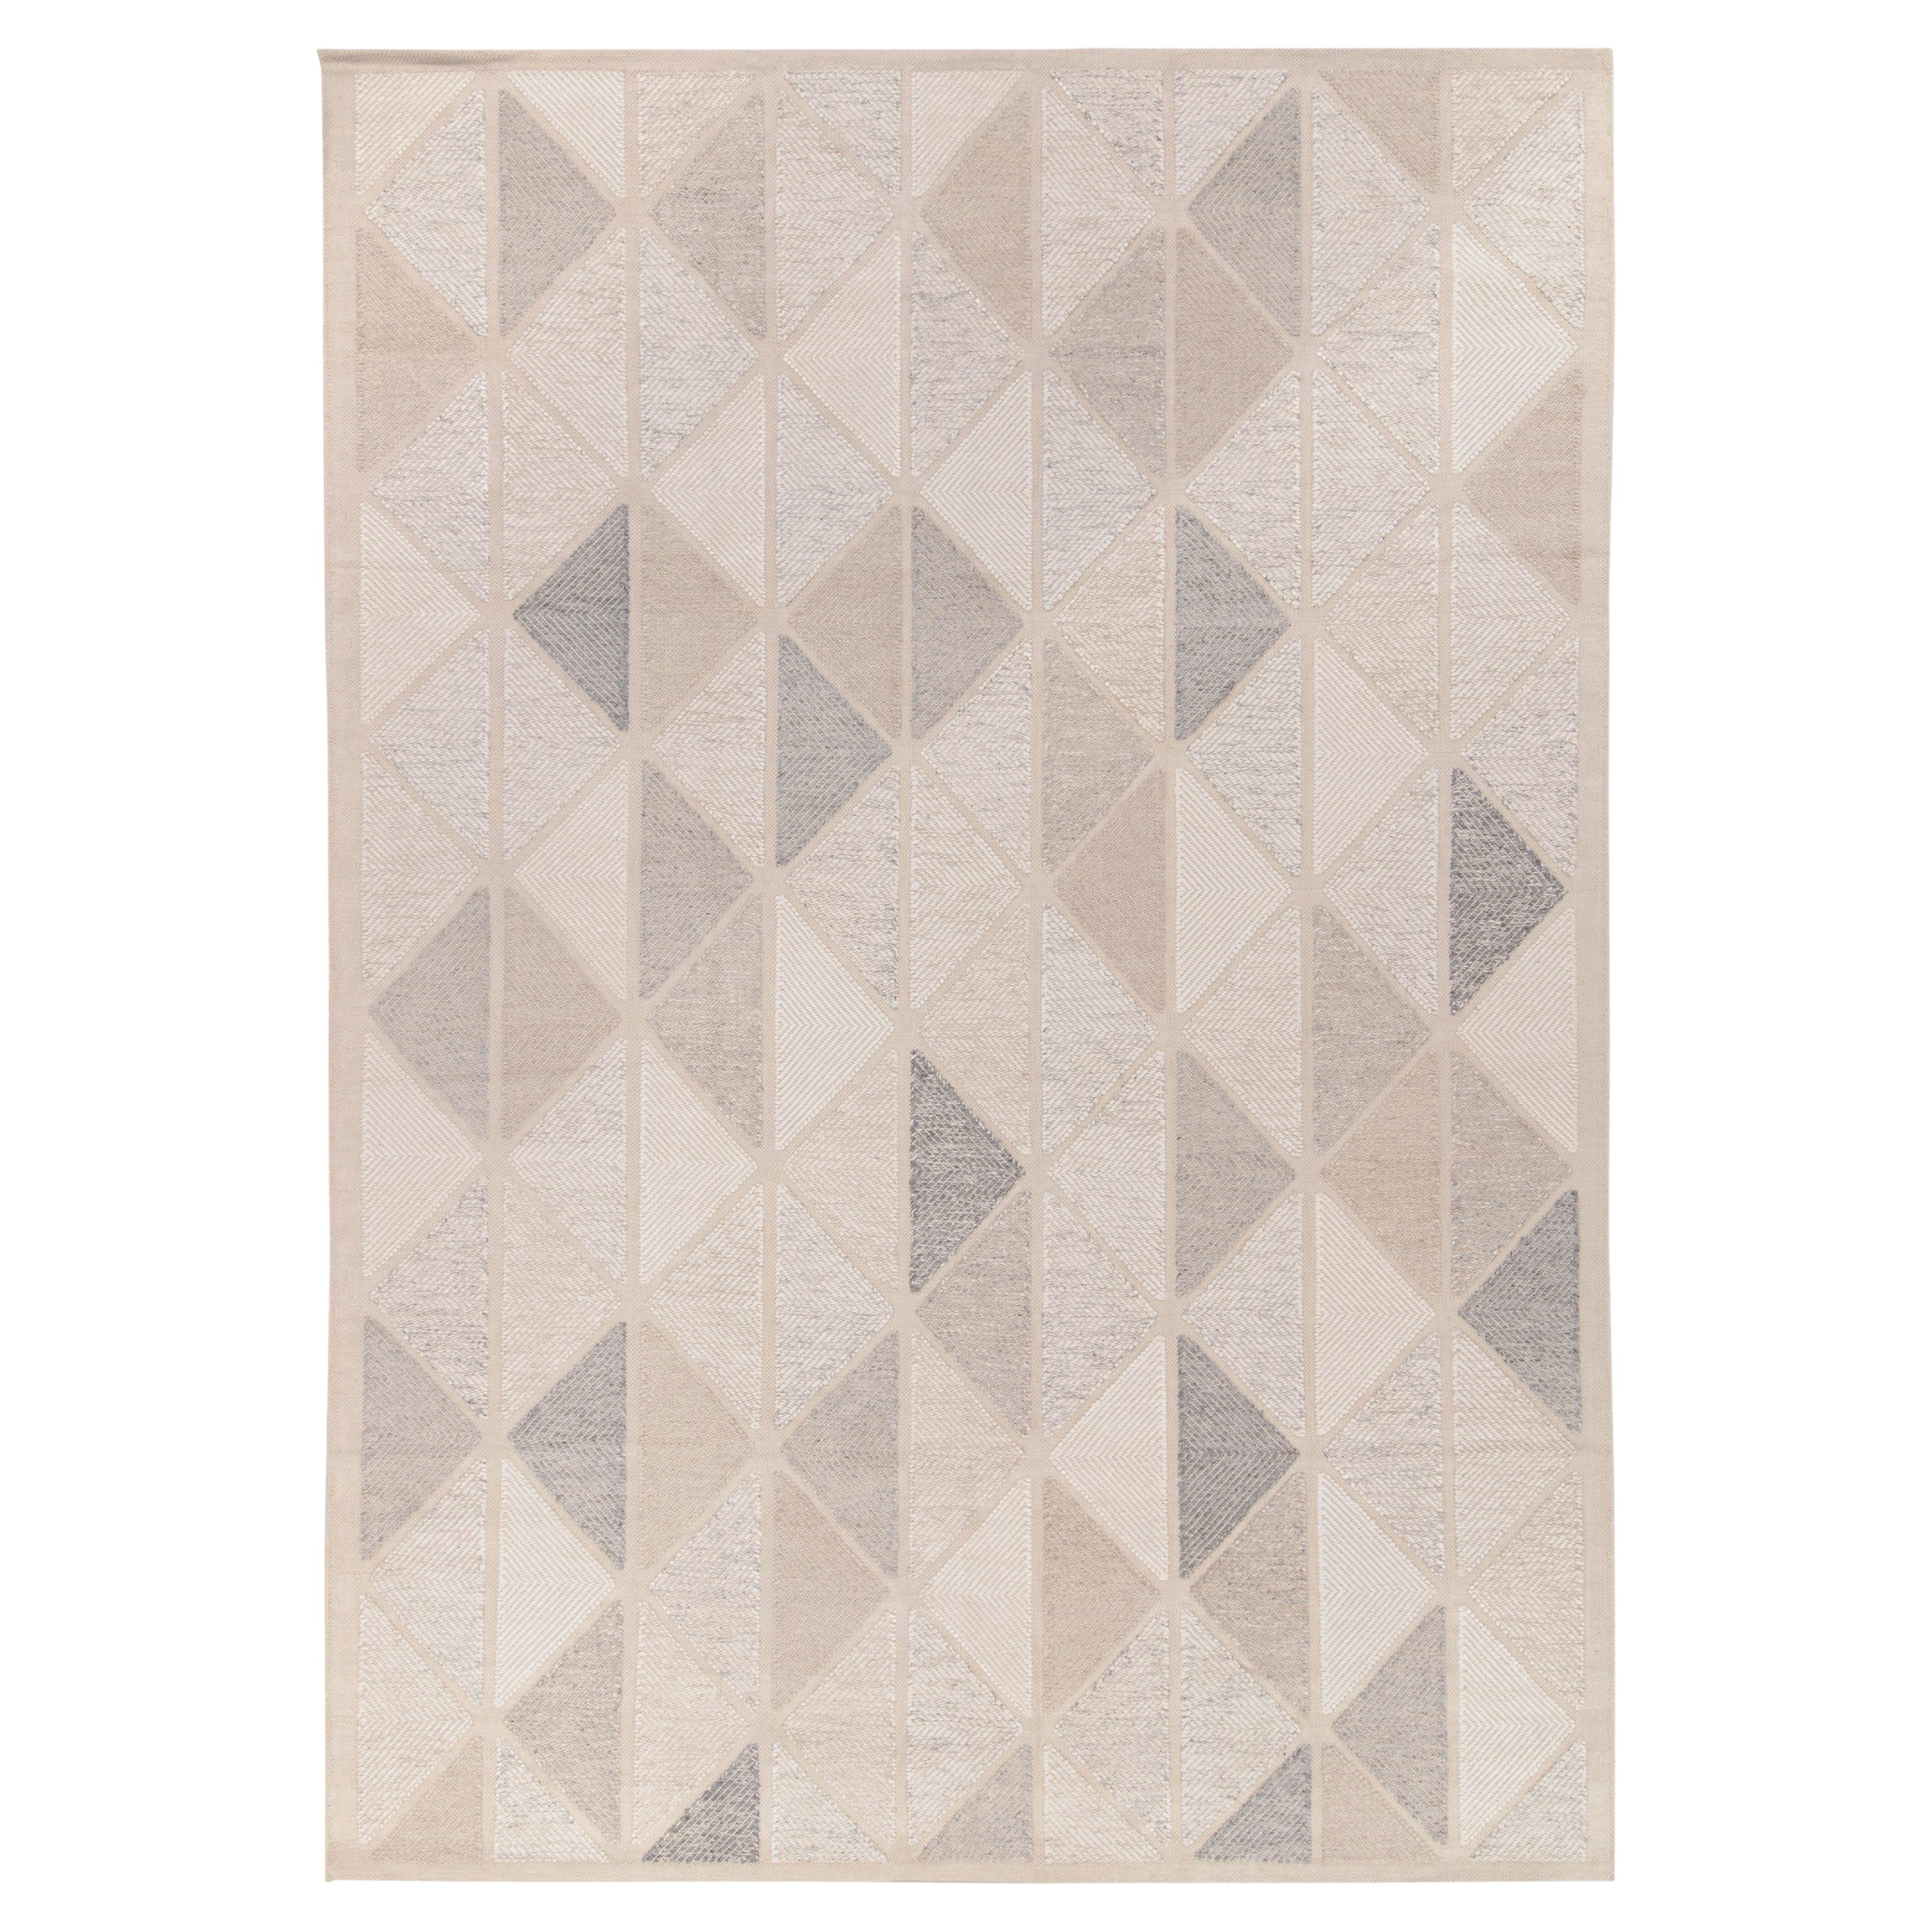 Teppich & Kelim-Teppich im skandinavischen Stil in Weiß, Grau mit geometrischem Muster